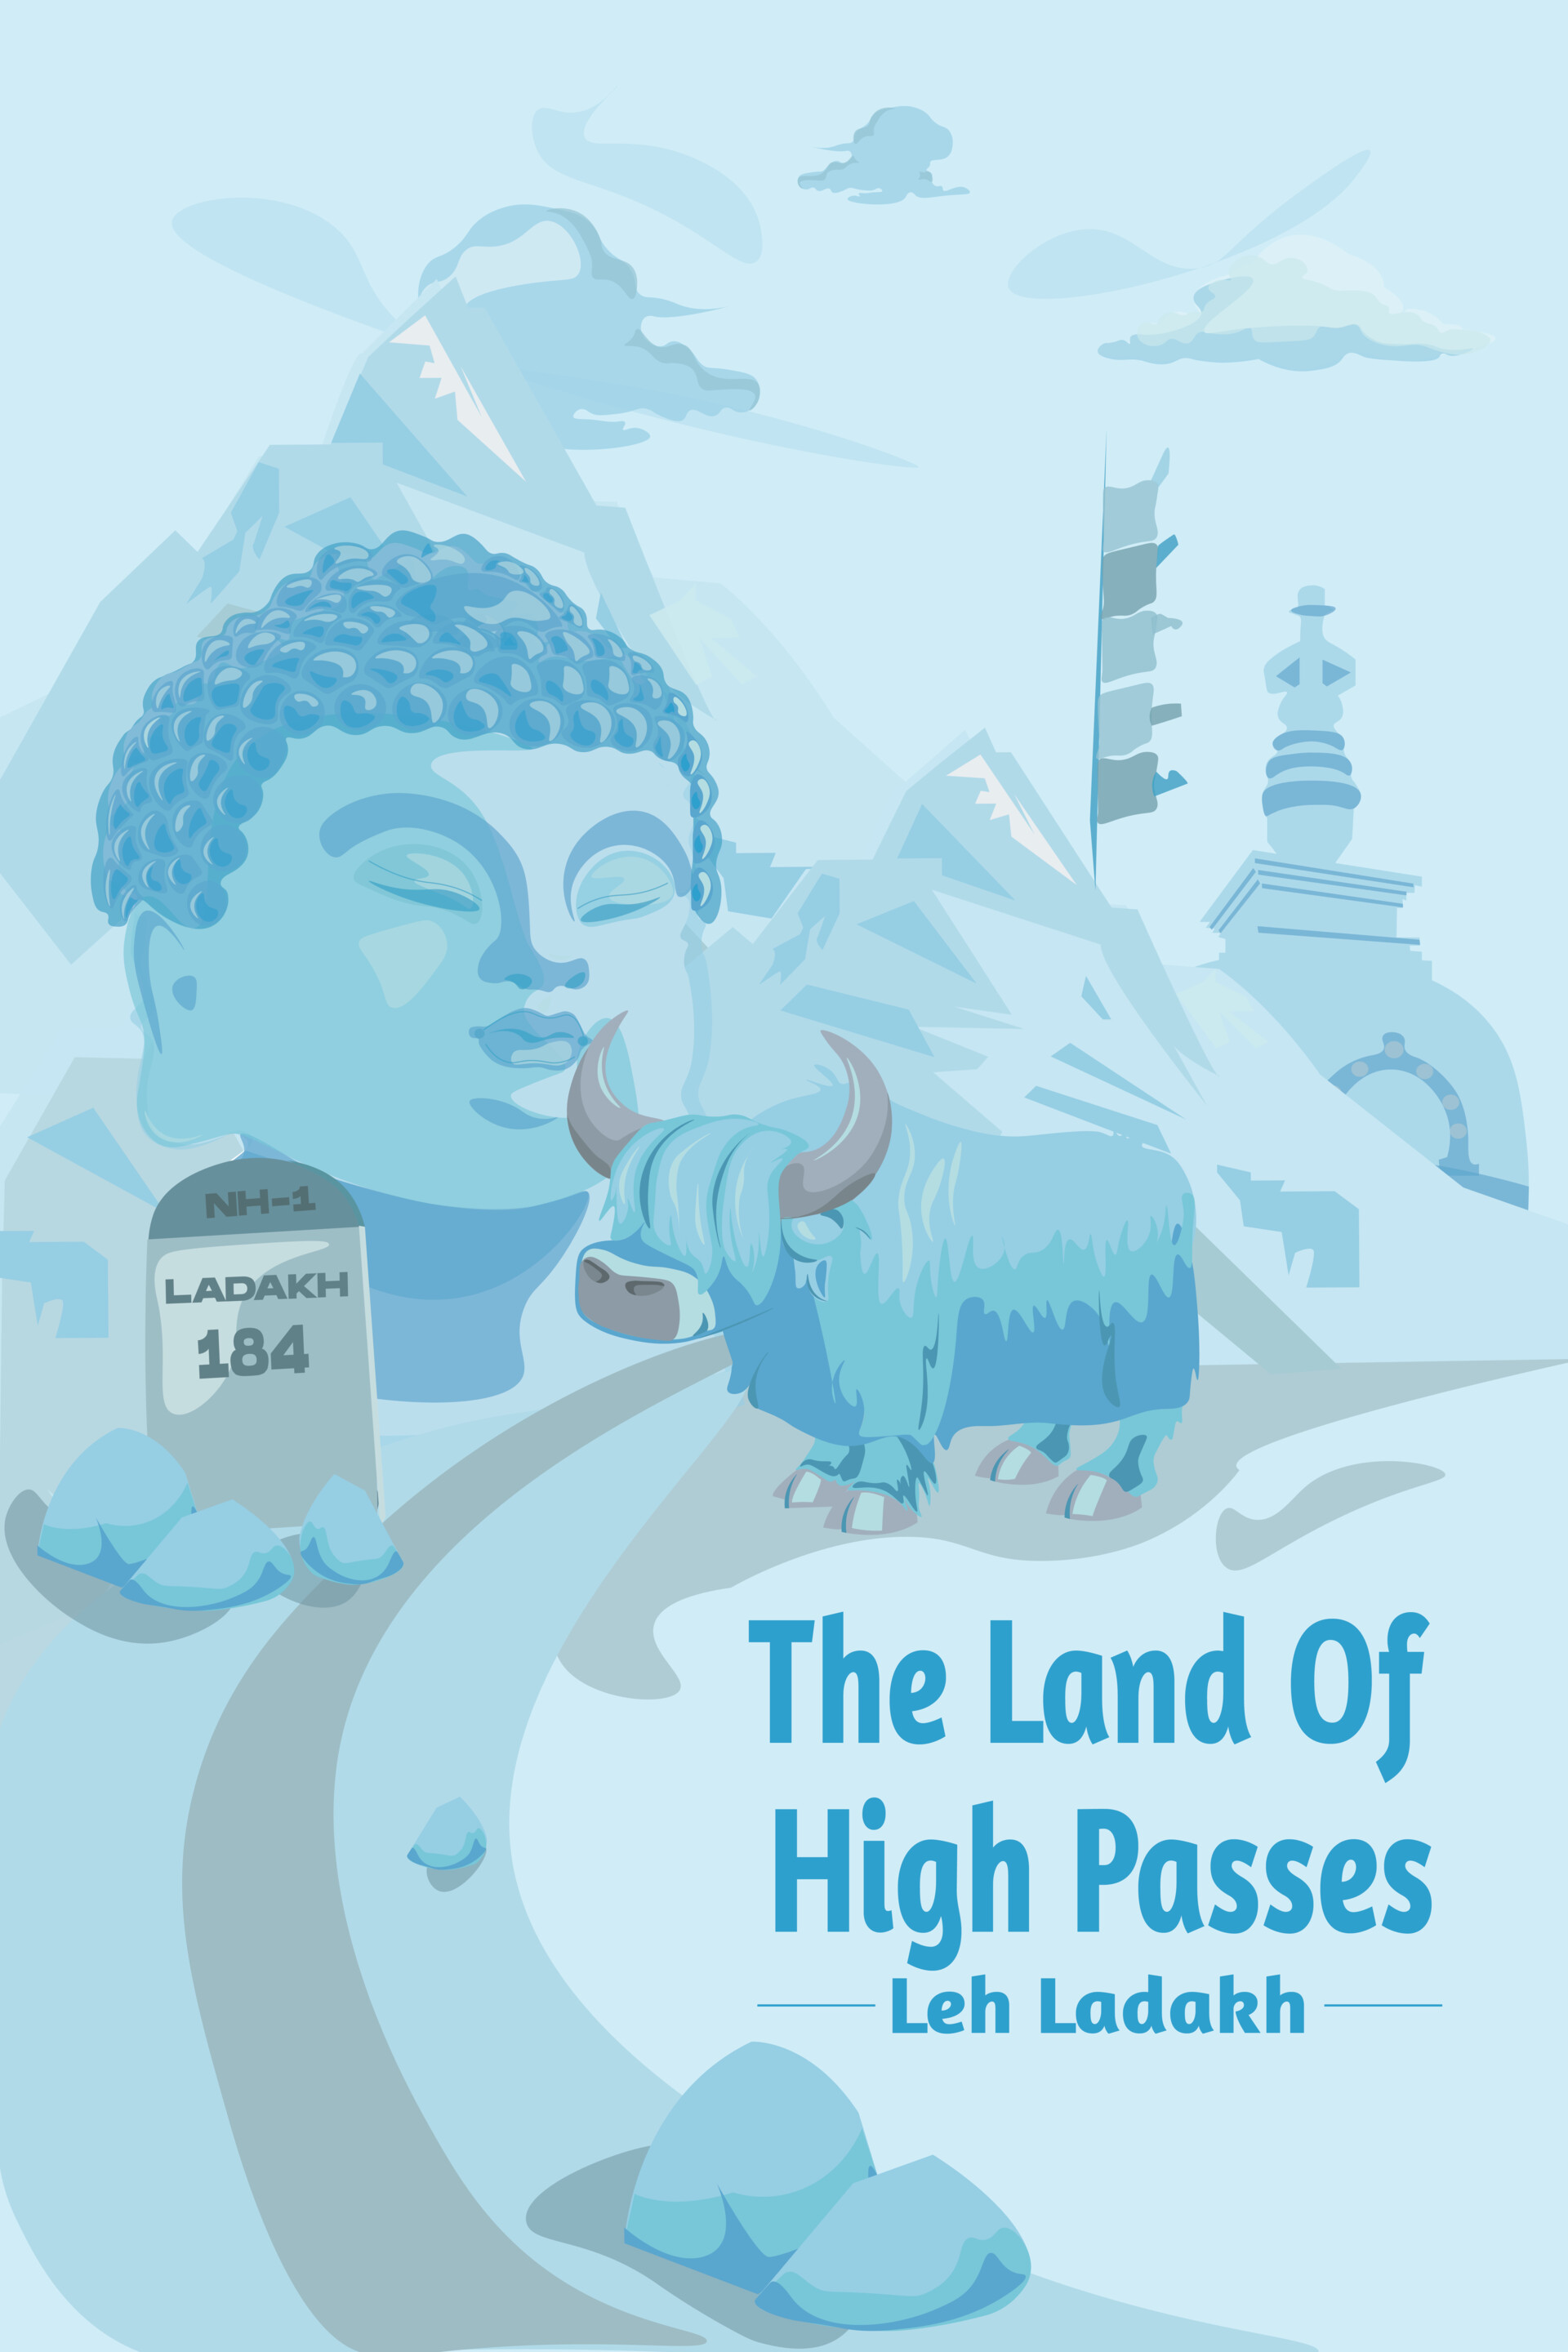 ladakh tourism logo competition